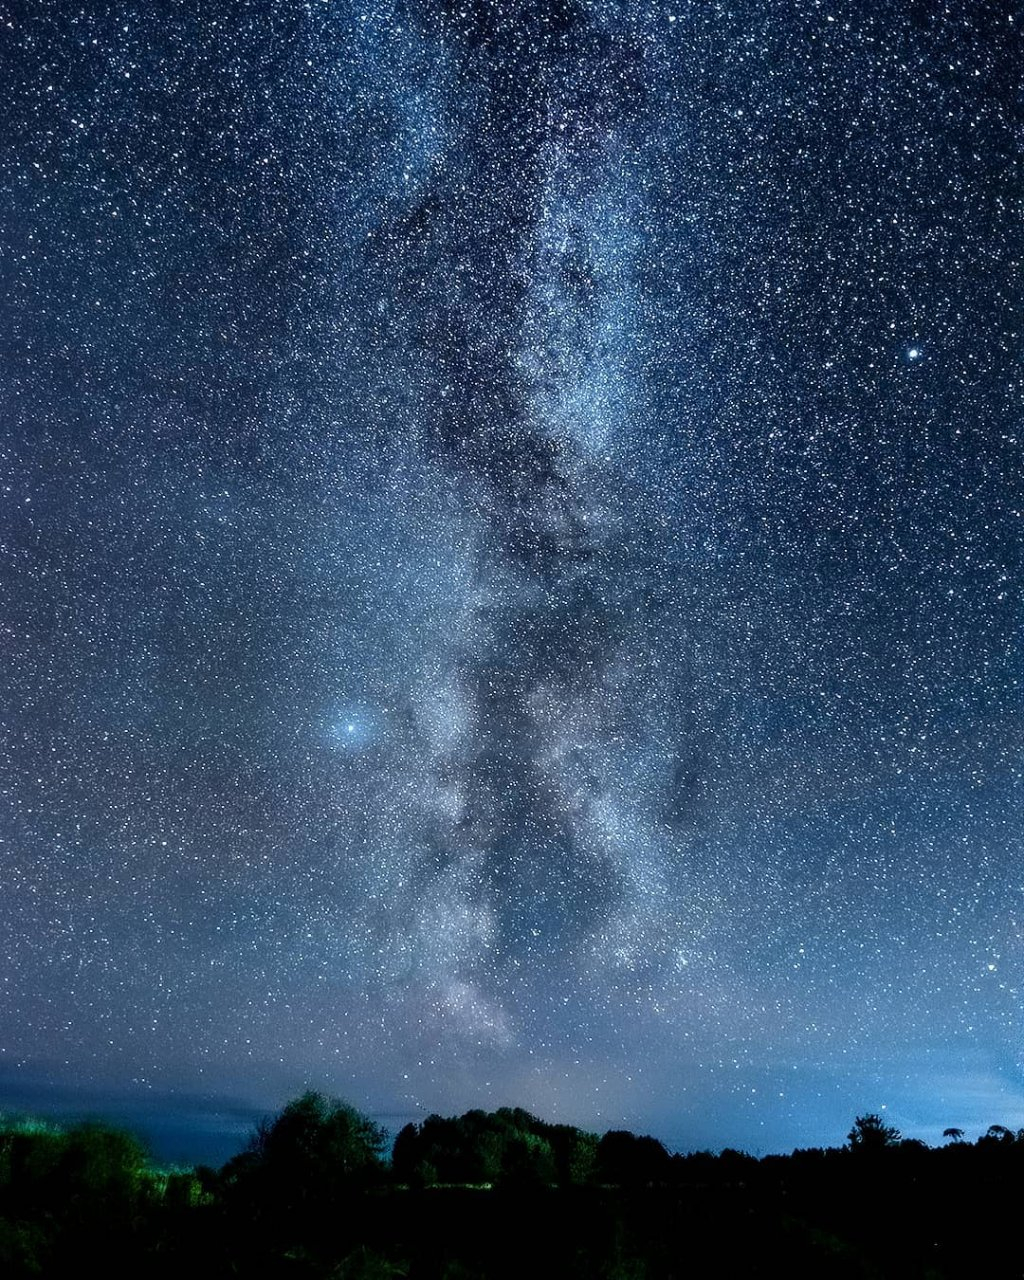 Фото дня от сыктывкарца: бескрайняя бездна звездного неба